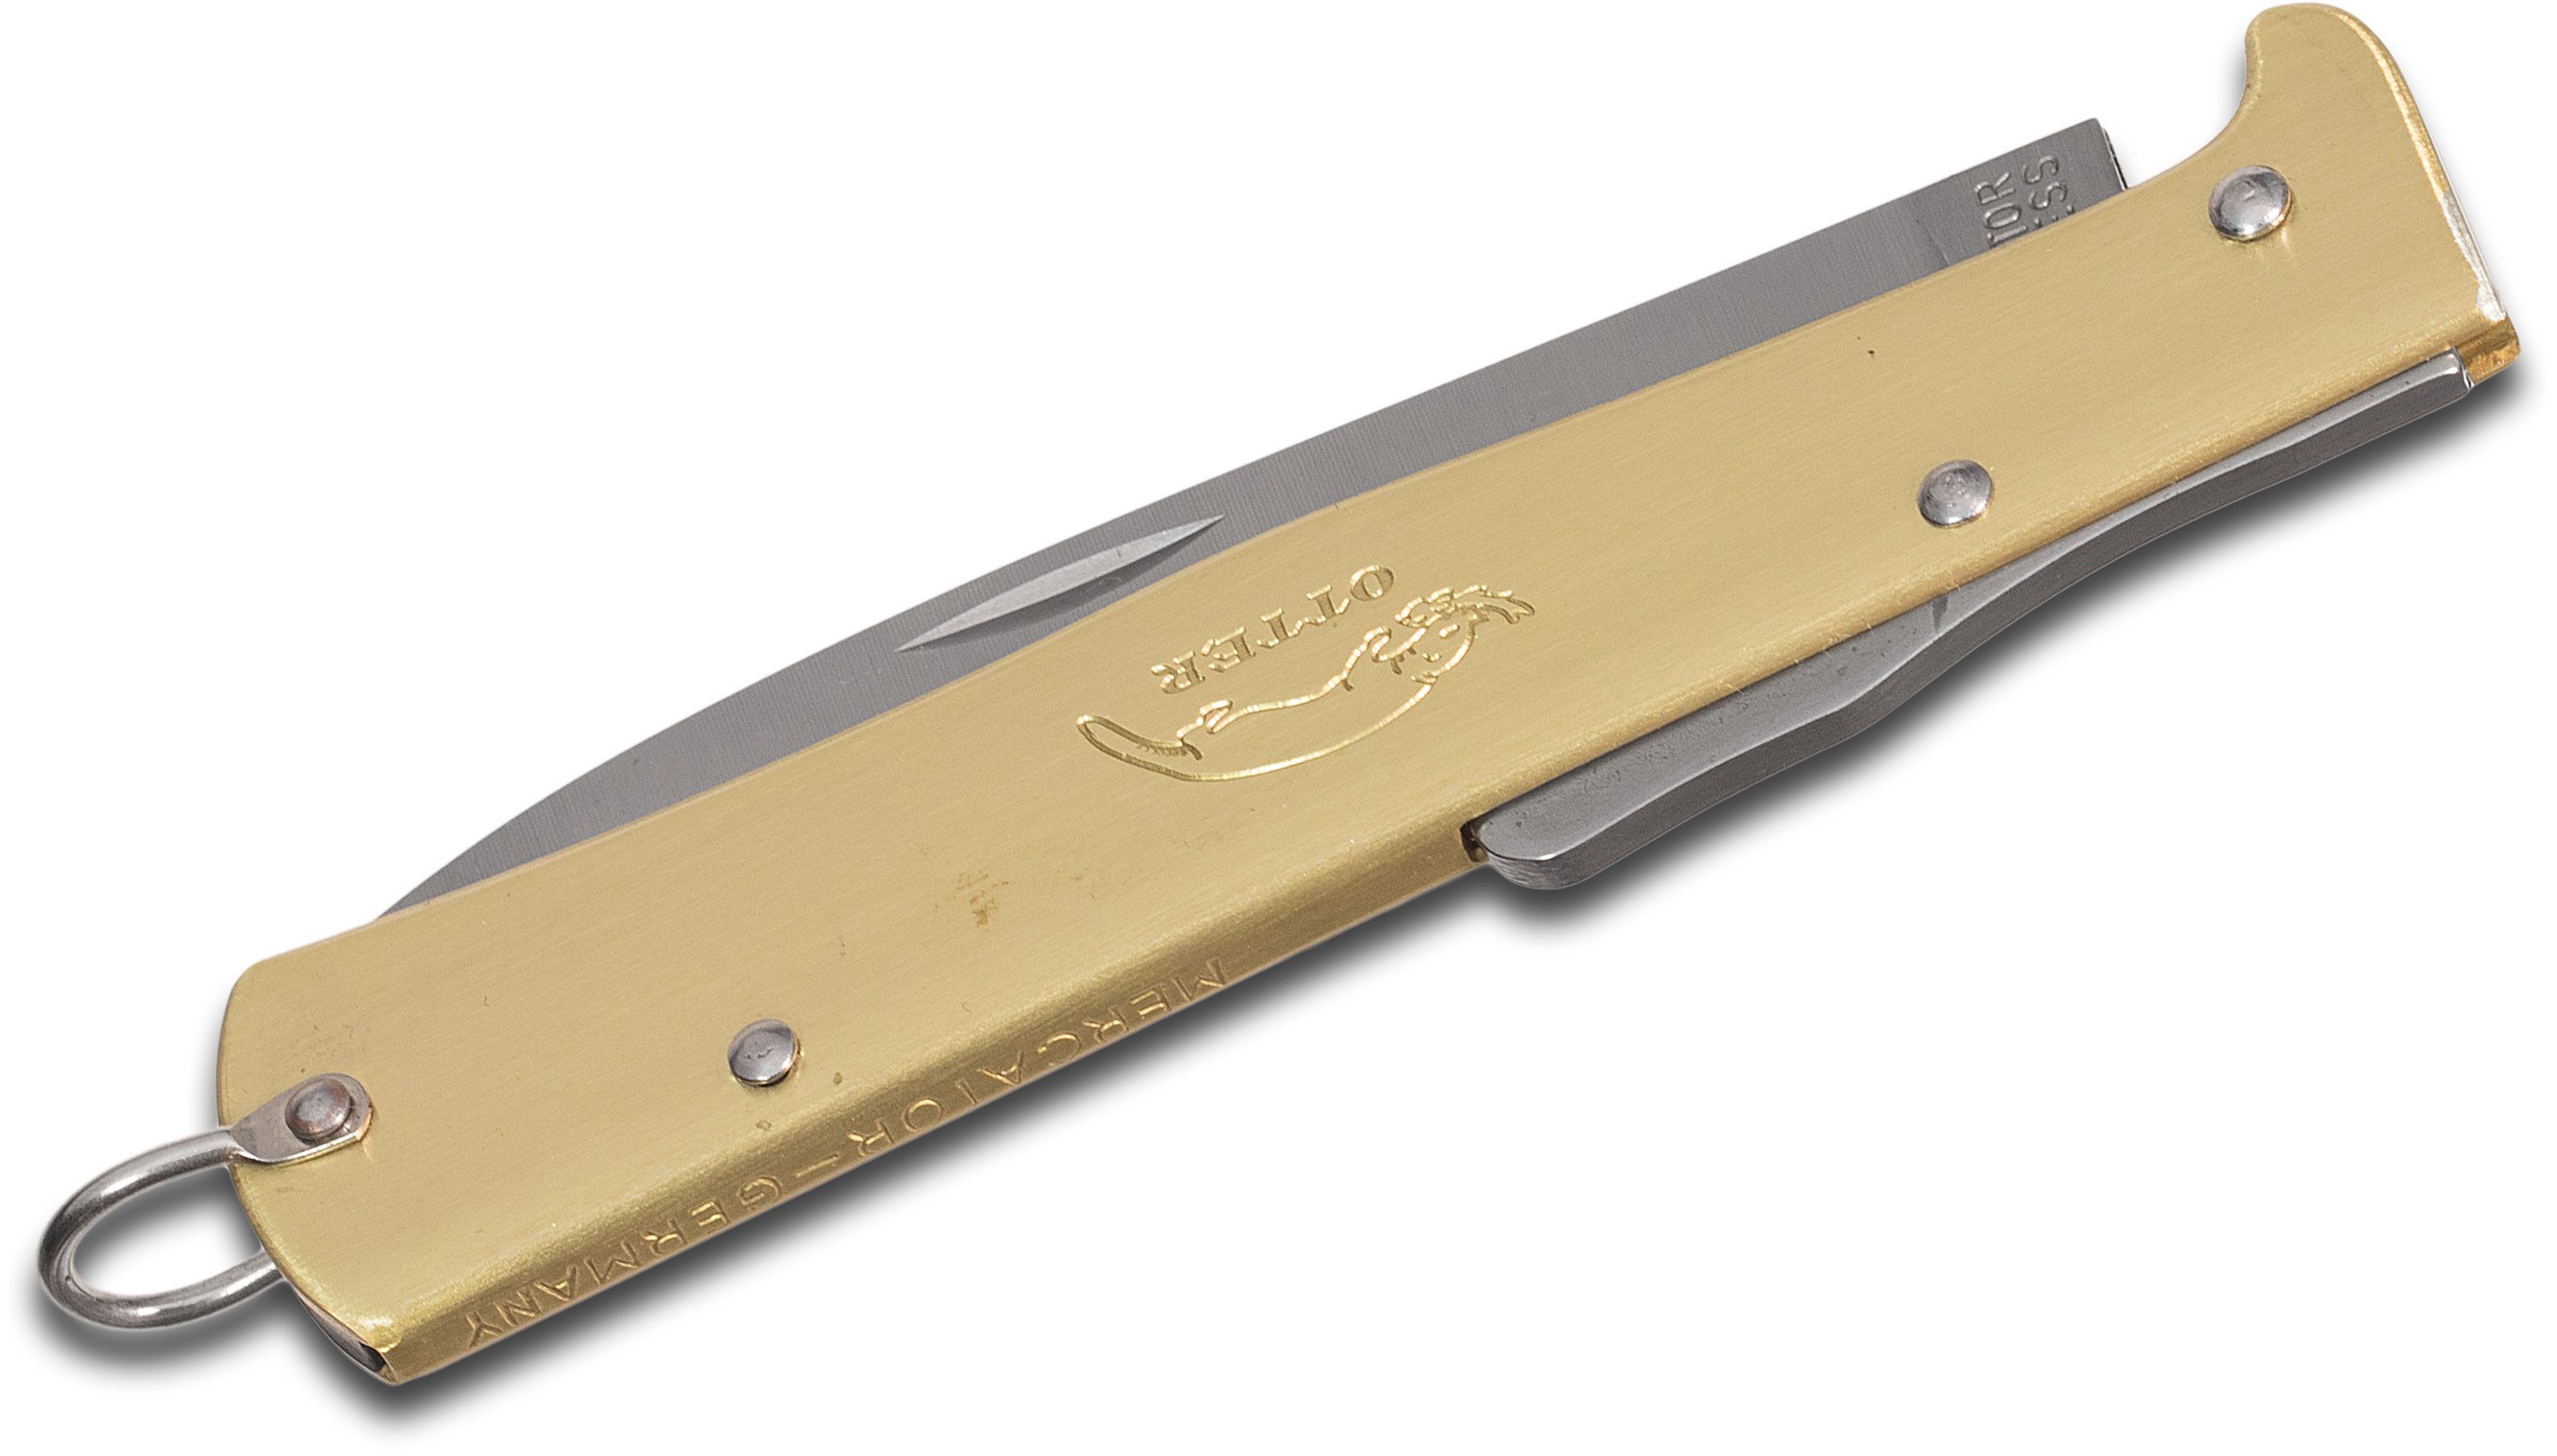 Otter Mercator Solingen K55 Brass Folding Knife German, Stainless Steel -  KnifeCenter - 10726R